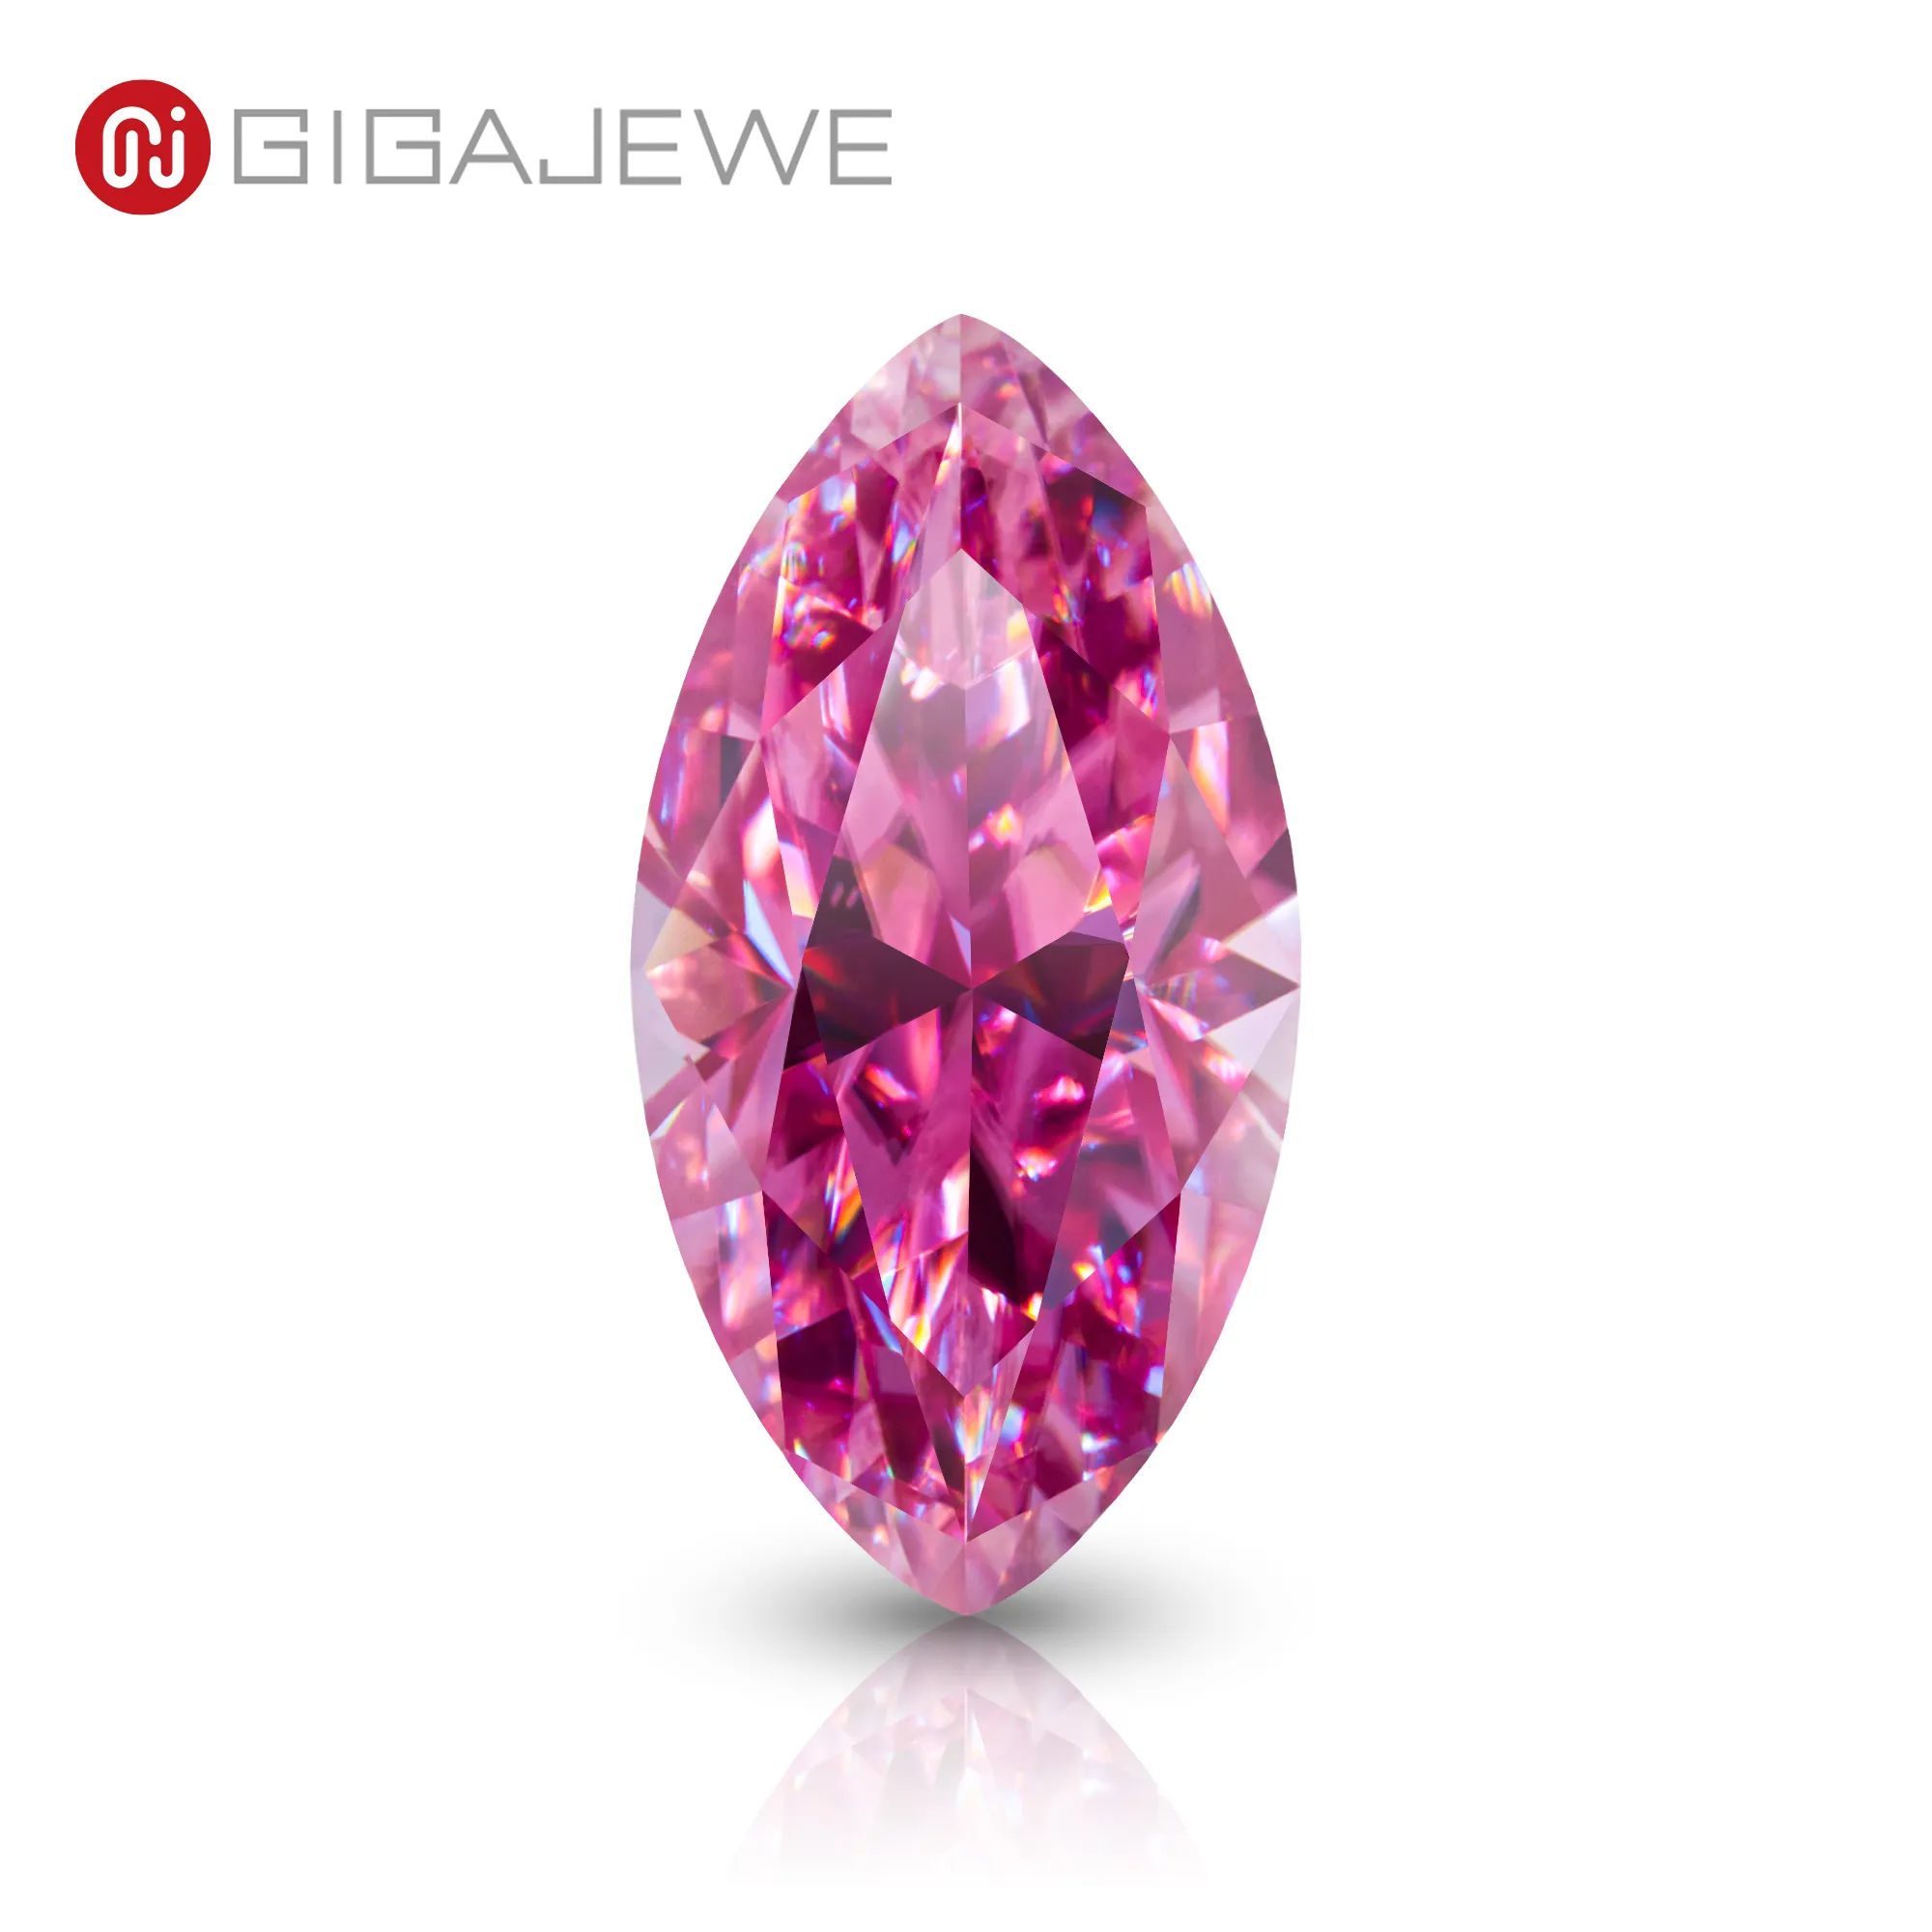 GIGAJEWE Diamante moissanite VVS1 taglio marquise di colore rosa da 1-3 ct per la creazione di gioielli